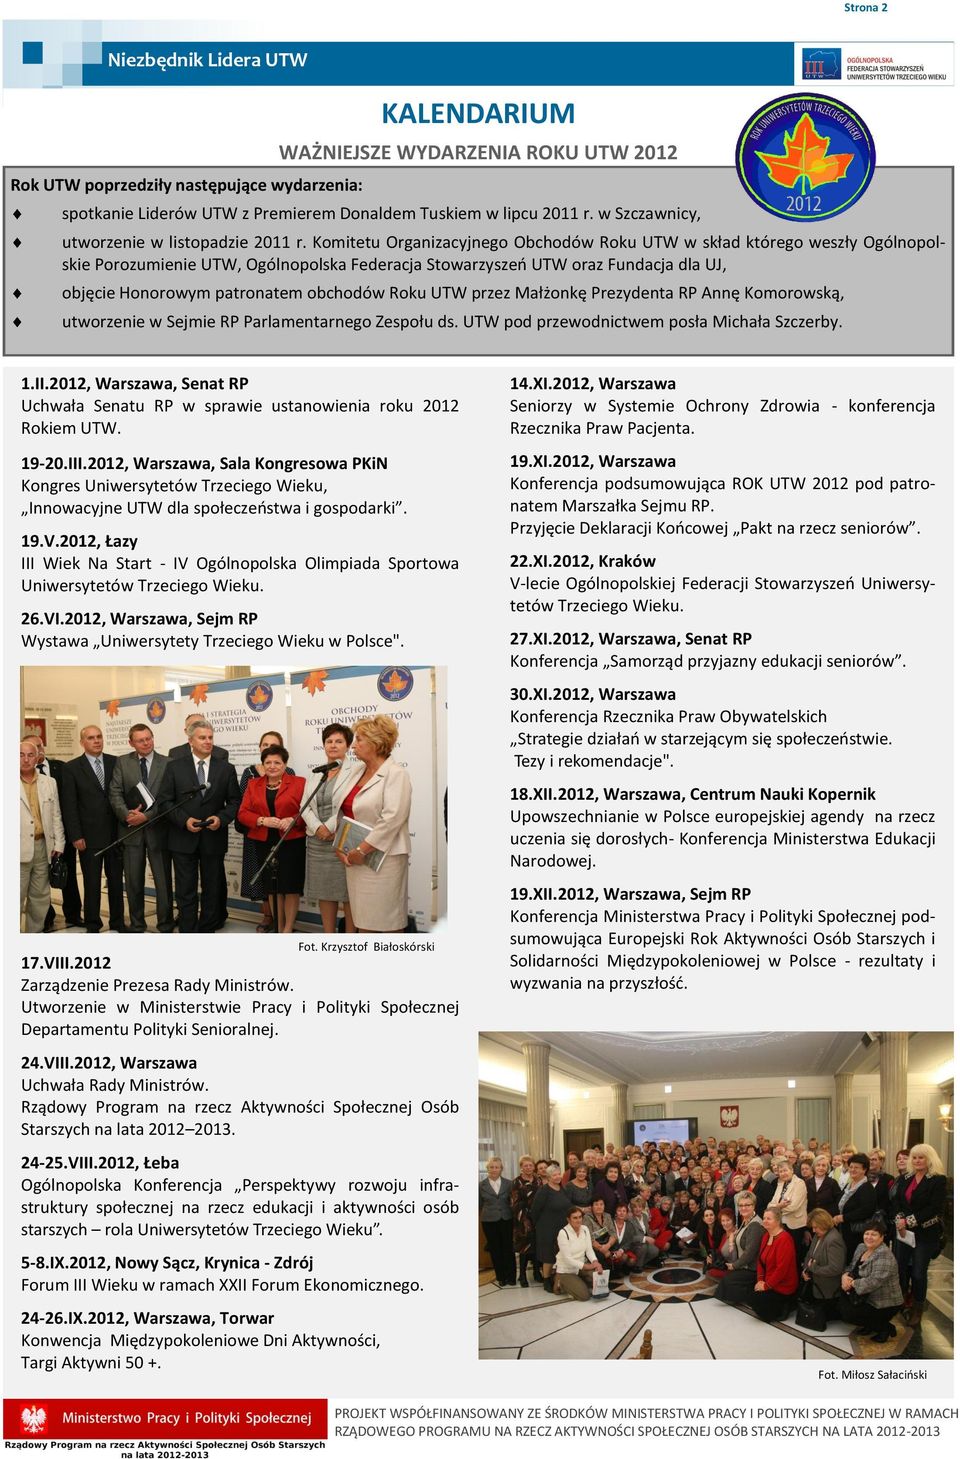 Komitetu Organizacyjnego Obchodów Roku UTW w skład którego weszły Ogólnopolskie Porozumienie UTW, Ogólnopolska Federacja Stowarzyszeń UTW oraz Fundacja dla UJ, objęcie Honorowym patronatem obchodów